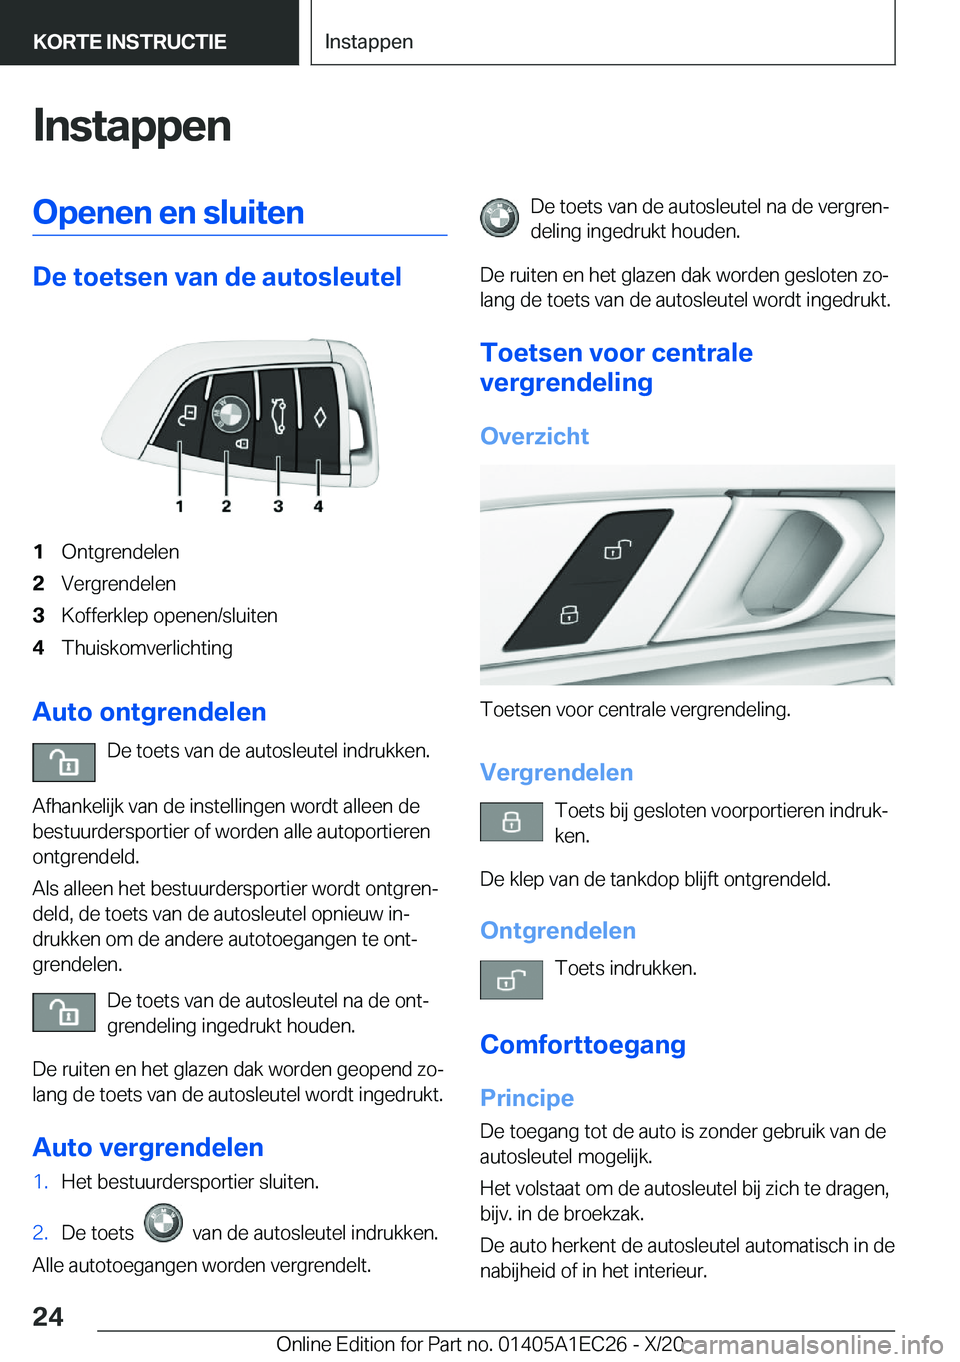 BMW 8 SERIES GRAN COUPE 2021  Instructieboekjes (in Dutch) �I�n�s�t�a�p�p�e�n�O�p�e�n�e�n��e�n��s�l�u�i�t�e�n
�D�e��t�o�e�t�s�e�n��v�a�n��d�e��a�u�t�o�s�l�e�u�t�e�l
�1�O�n�t�g�r�e�n�d�e�l�e�n�2�V�e�r�g�r�e�n�d�e�l�e�n�3�K�o�f�f�e�r�k�l�e�p��o�p�e�n�e�n